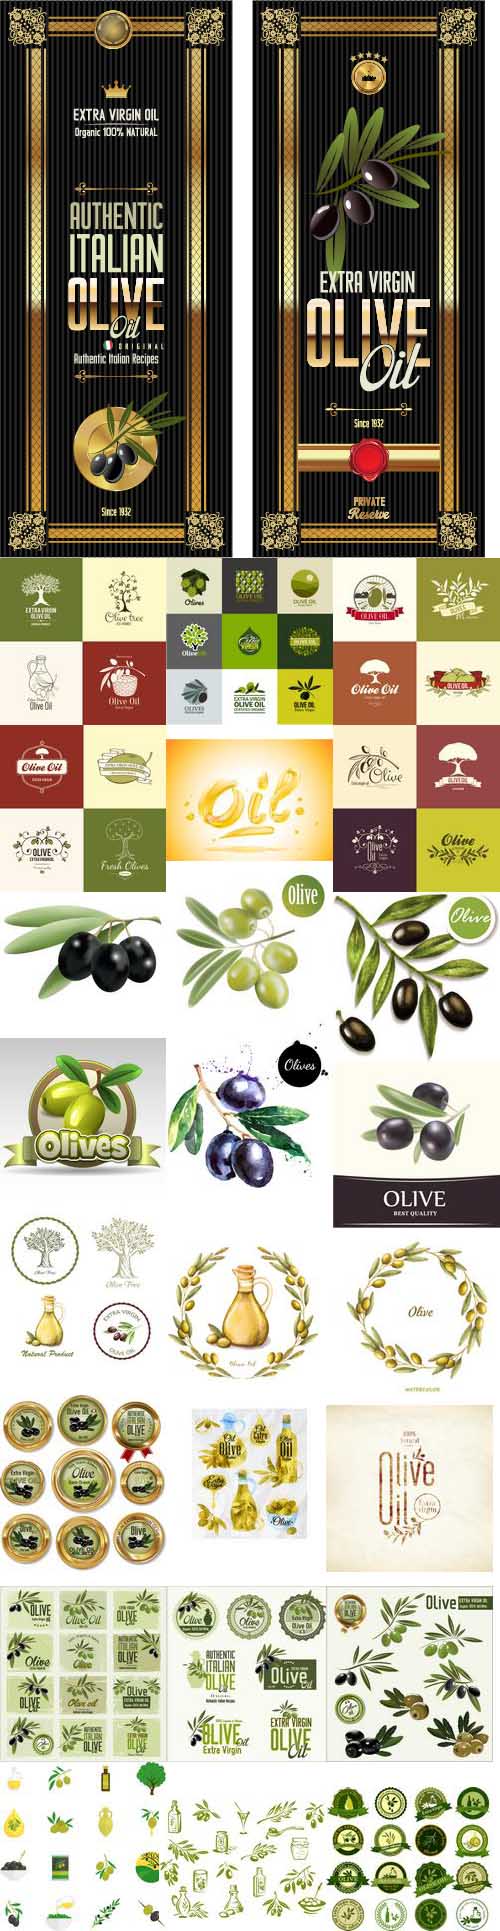 Olive Oil Design